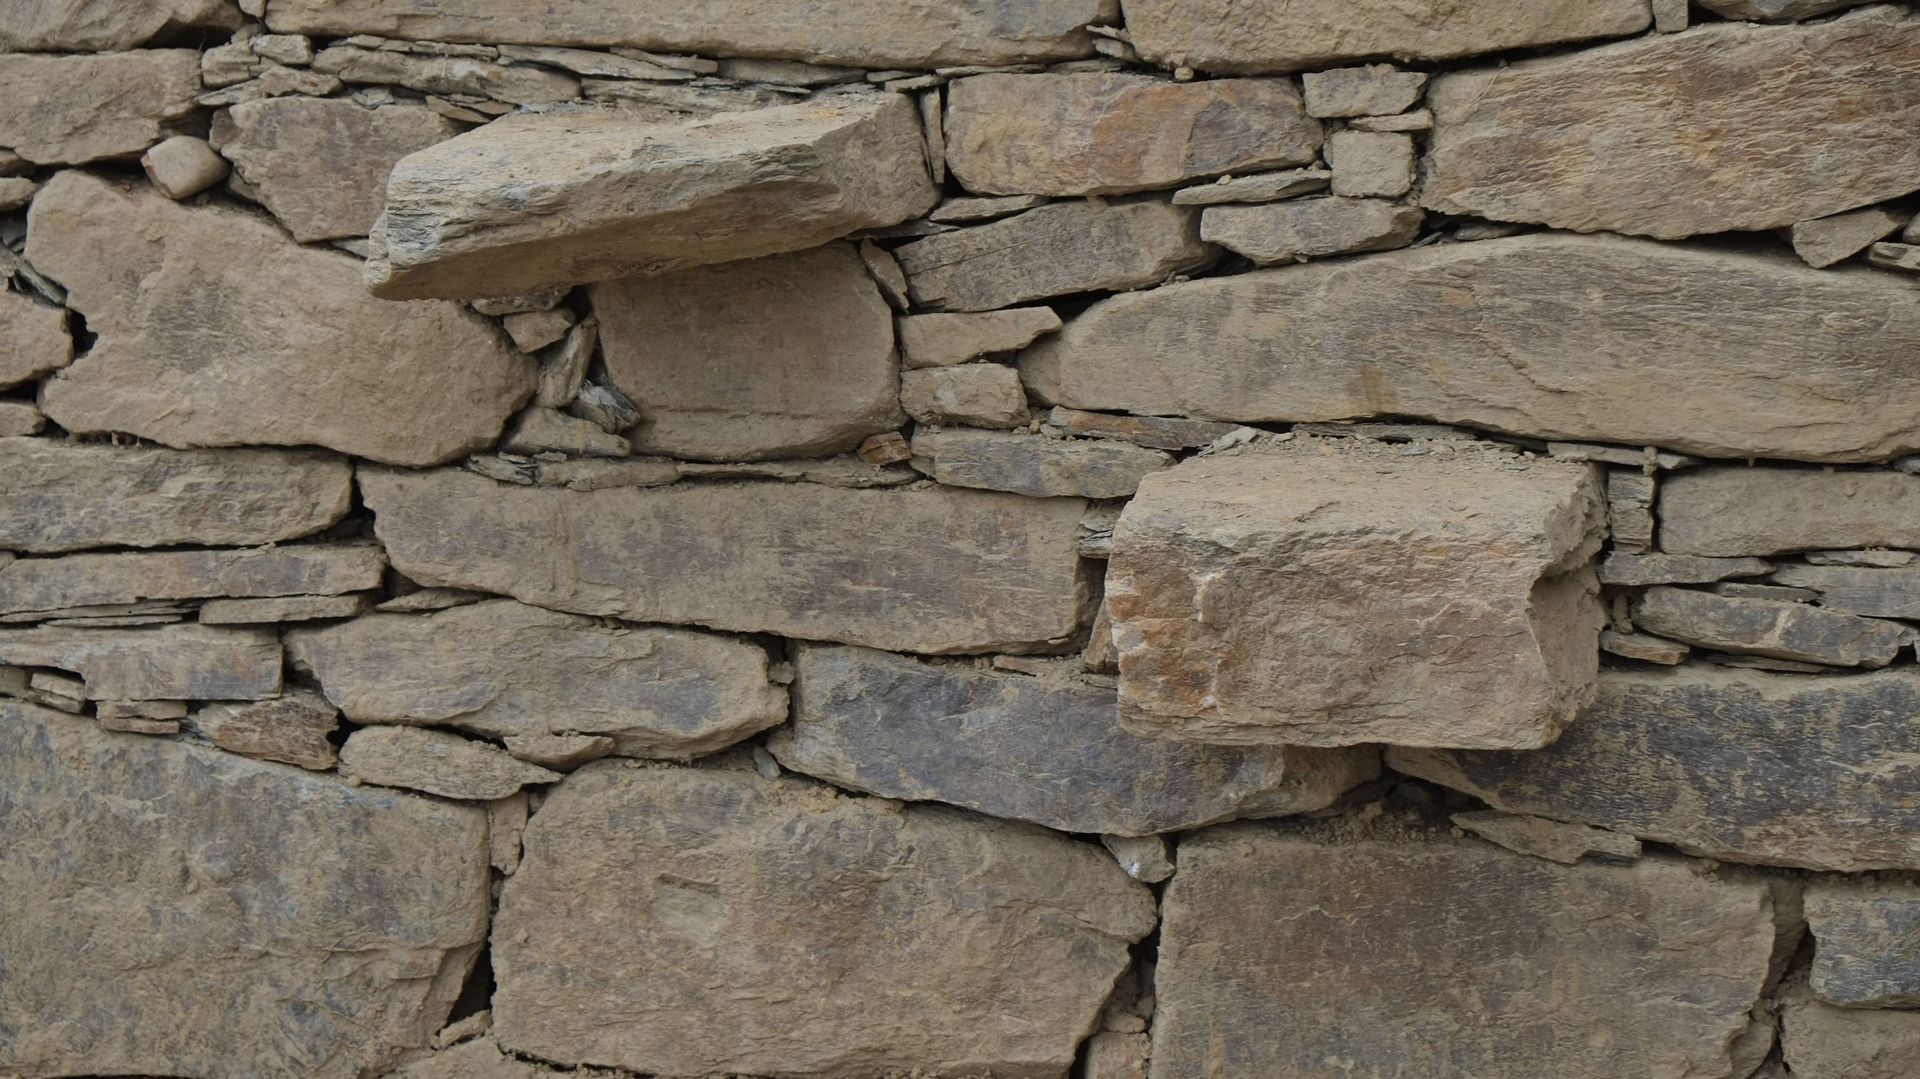 Le mur s’élève en utilisant le meilleur potentiel de chaque pierre. Ces blocs qui semblaient informes constituent une paroi plane. Même les pierres de calage contribuent à l’effet de surface. Un tel mur peut comporter des marches pour l’escalader.
